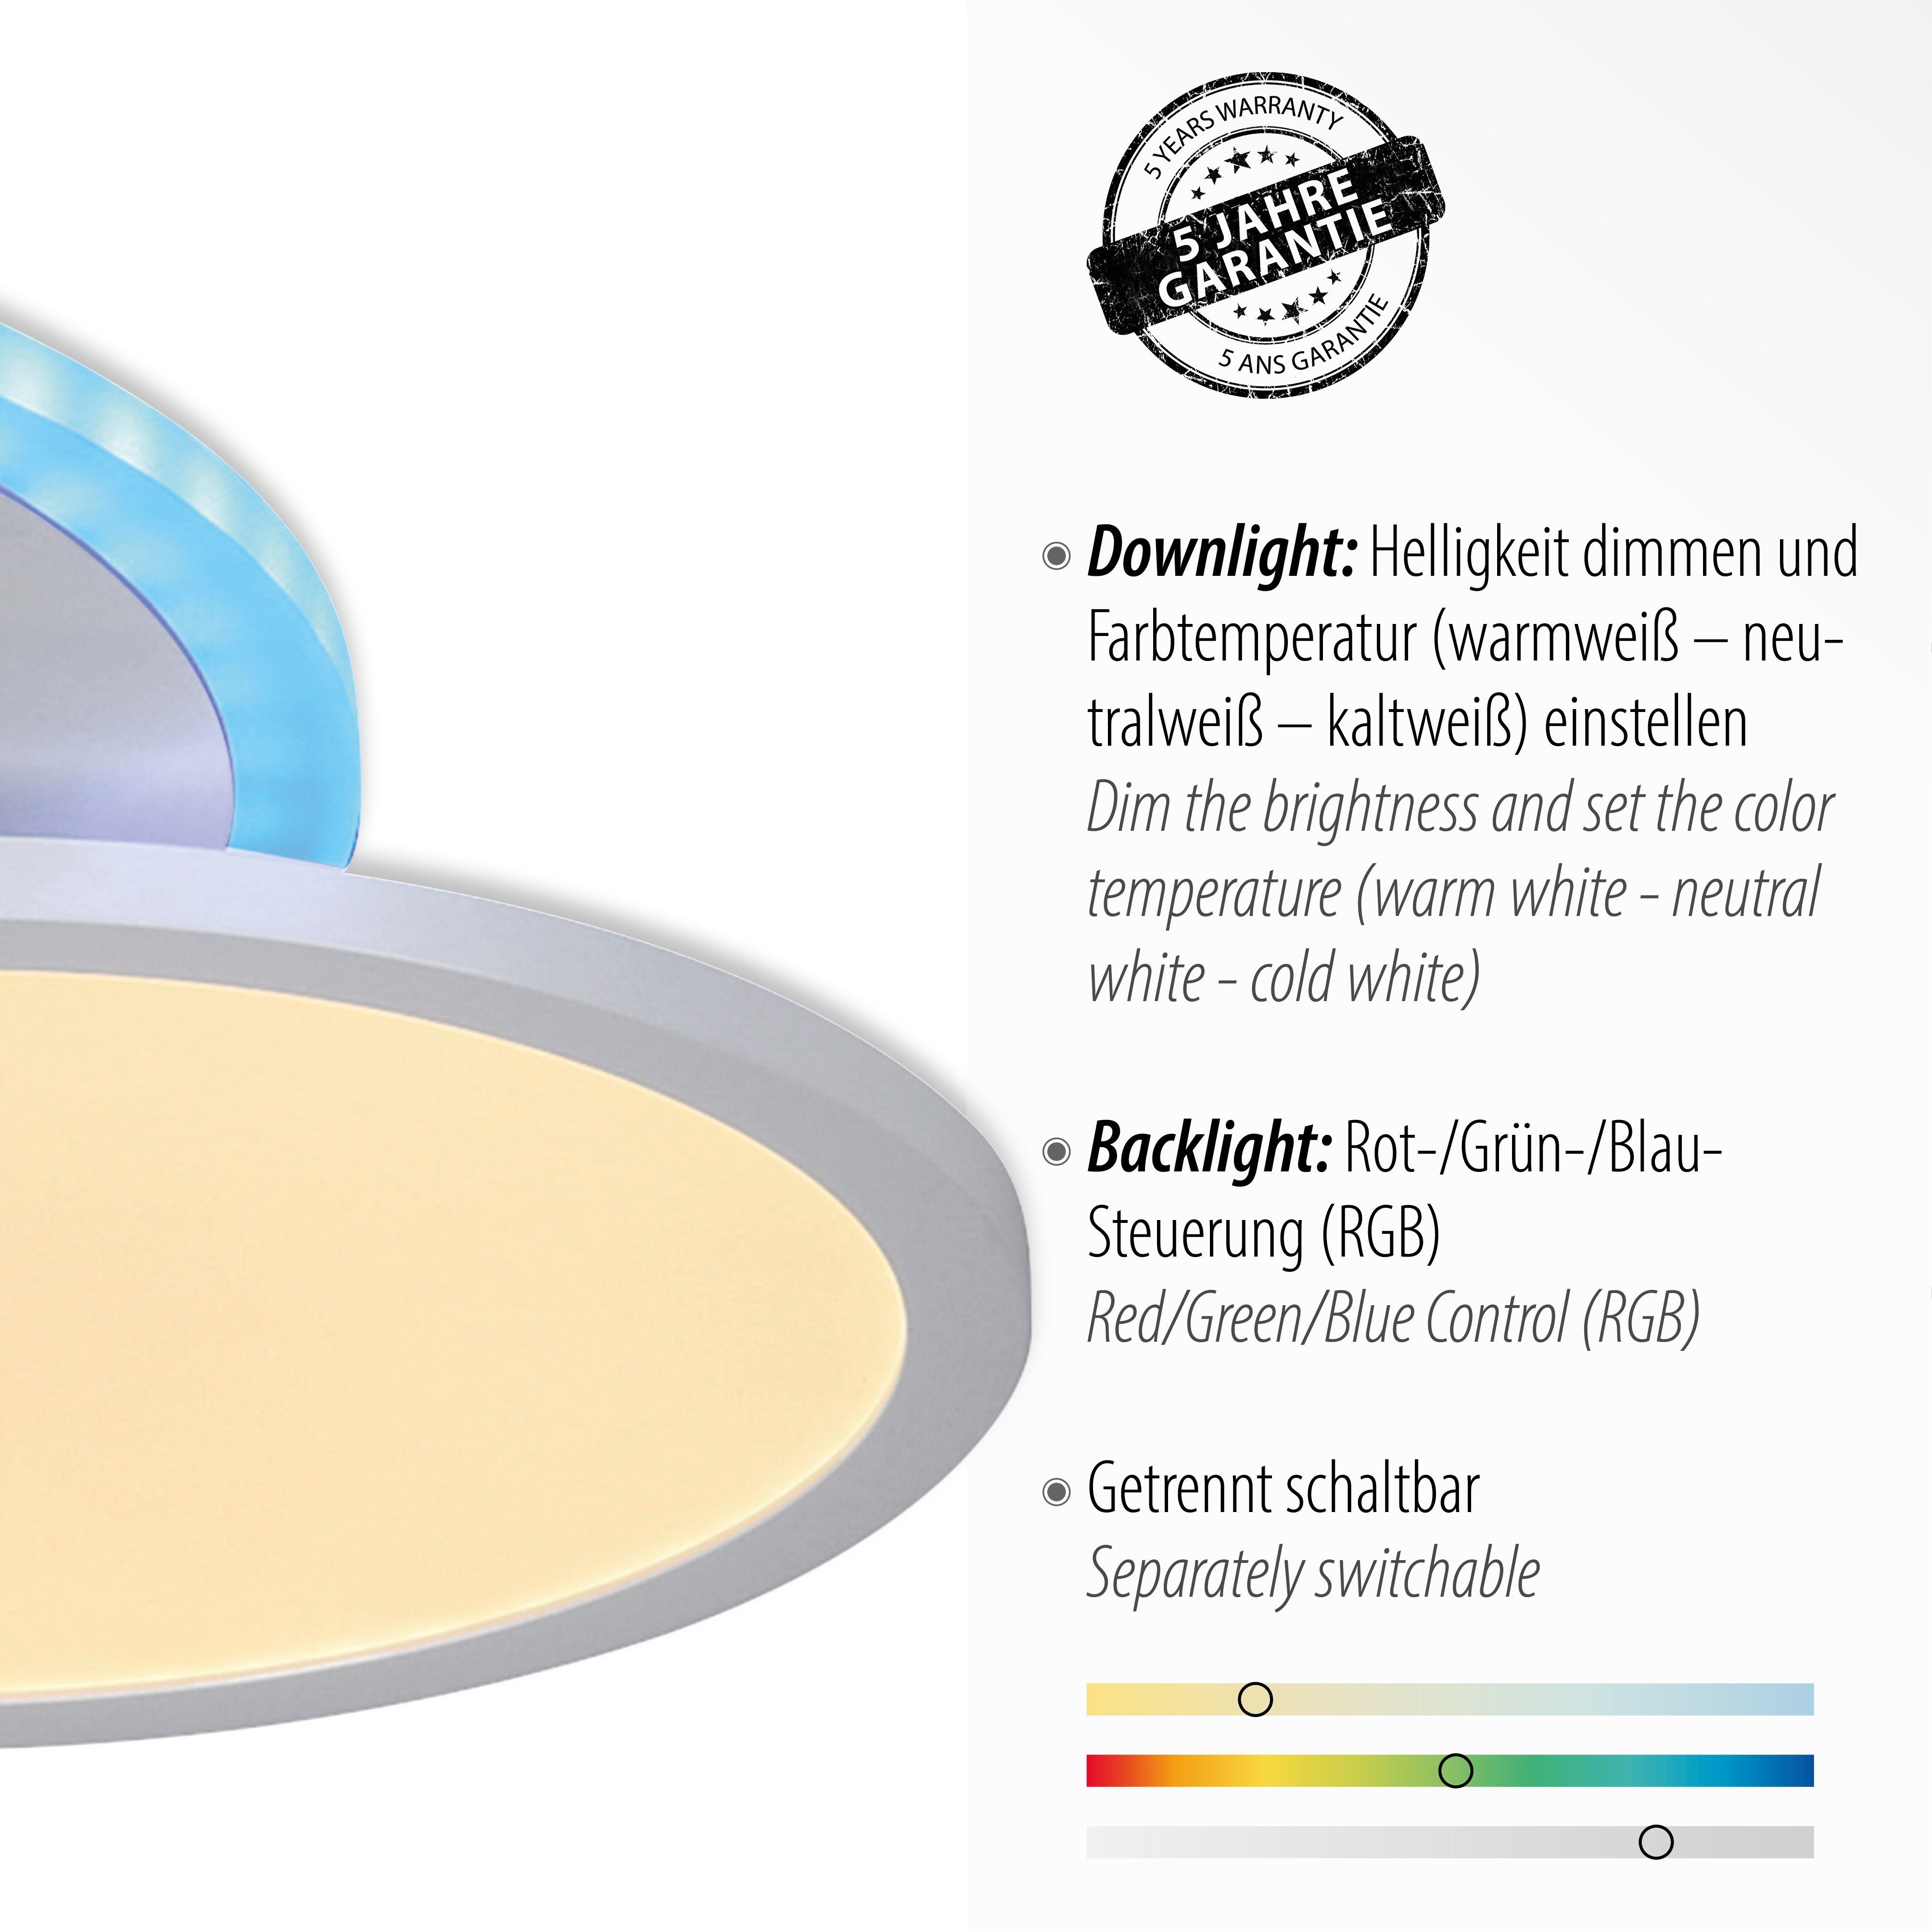 LED LED, Deckenleuchte über CCT fest - white, Direkt integriert, Fernbedienung ARENDA, dimmbar Leuchten - tunable RGB, warmweiß kaltweiß,